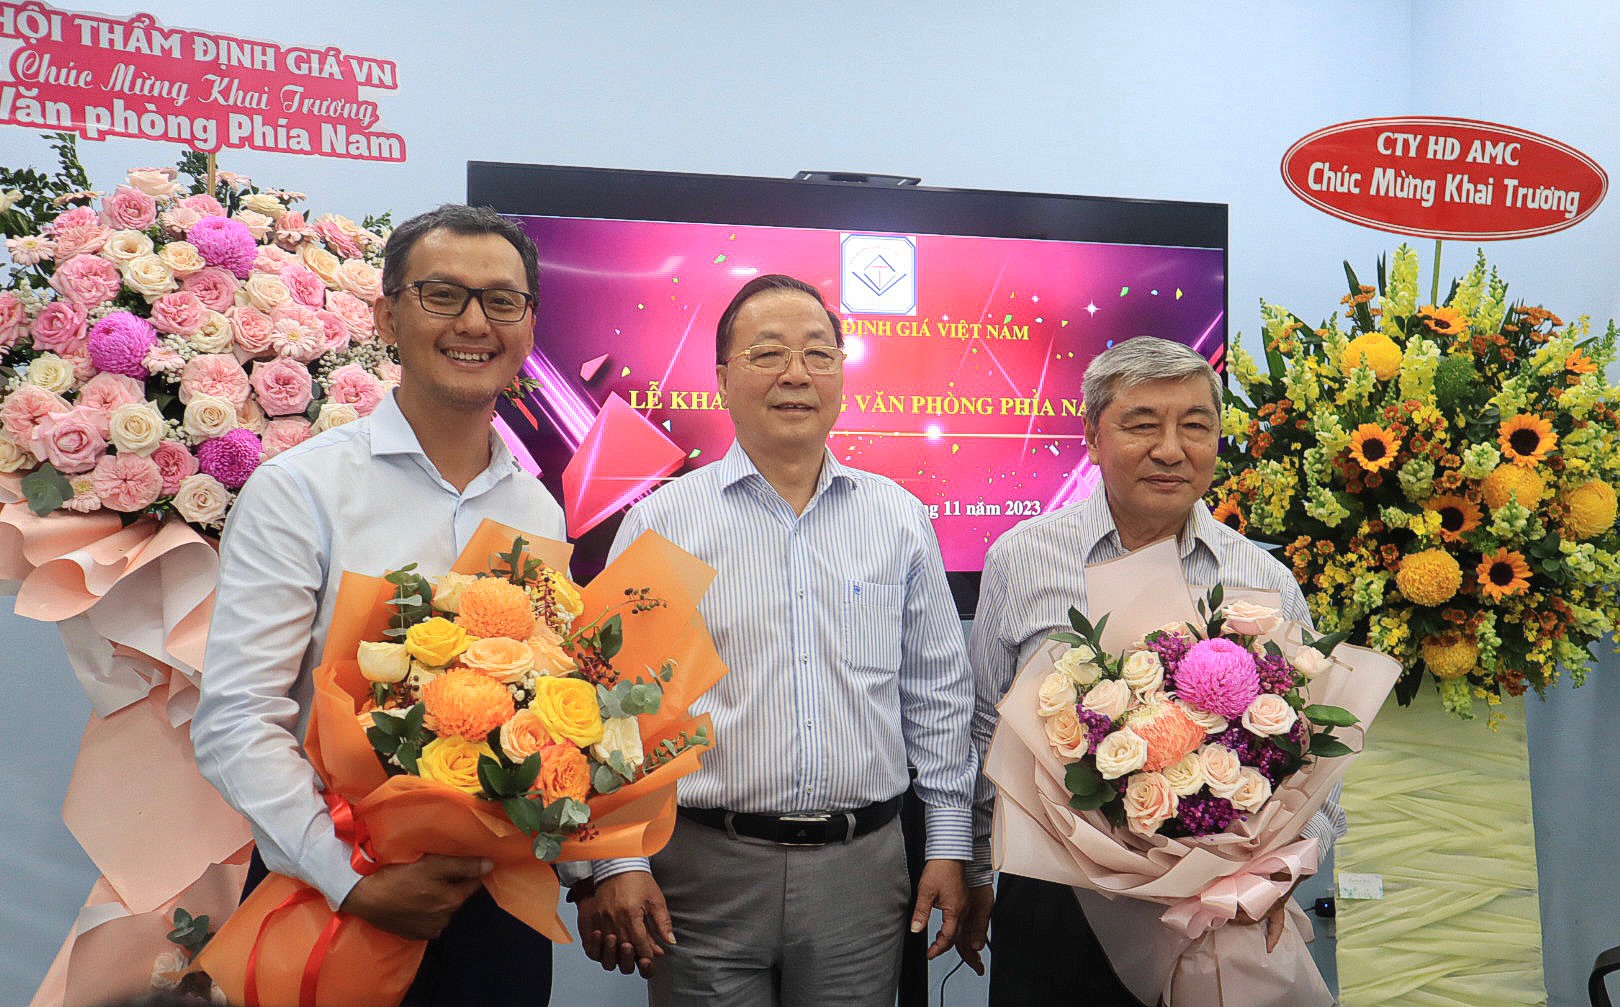 Hội Thẩm định giá Việt Nam khai trương văn phòng trụ sở mới tại TPHCM